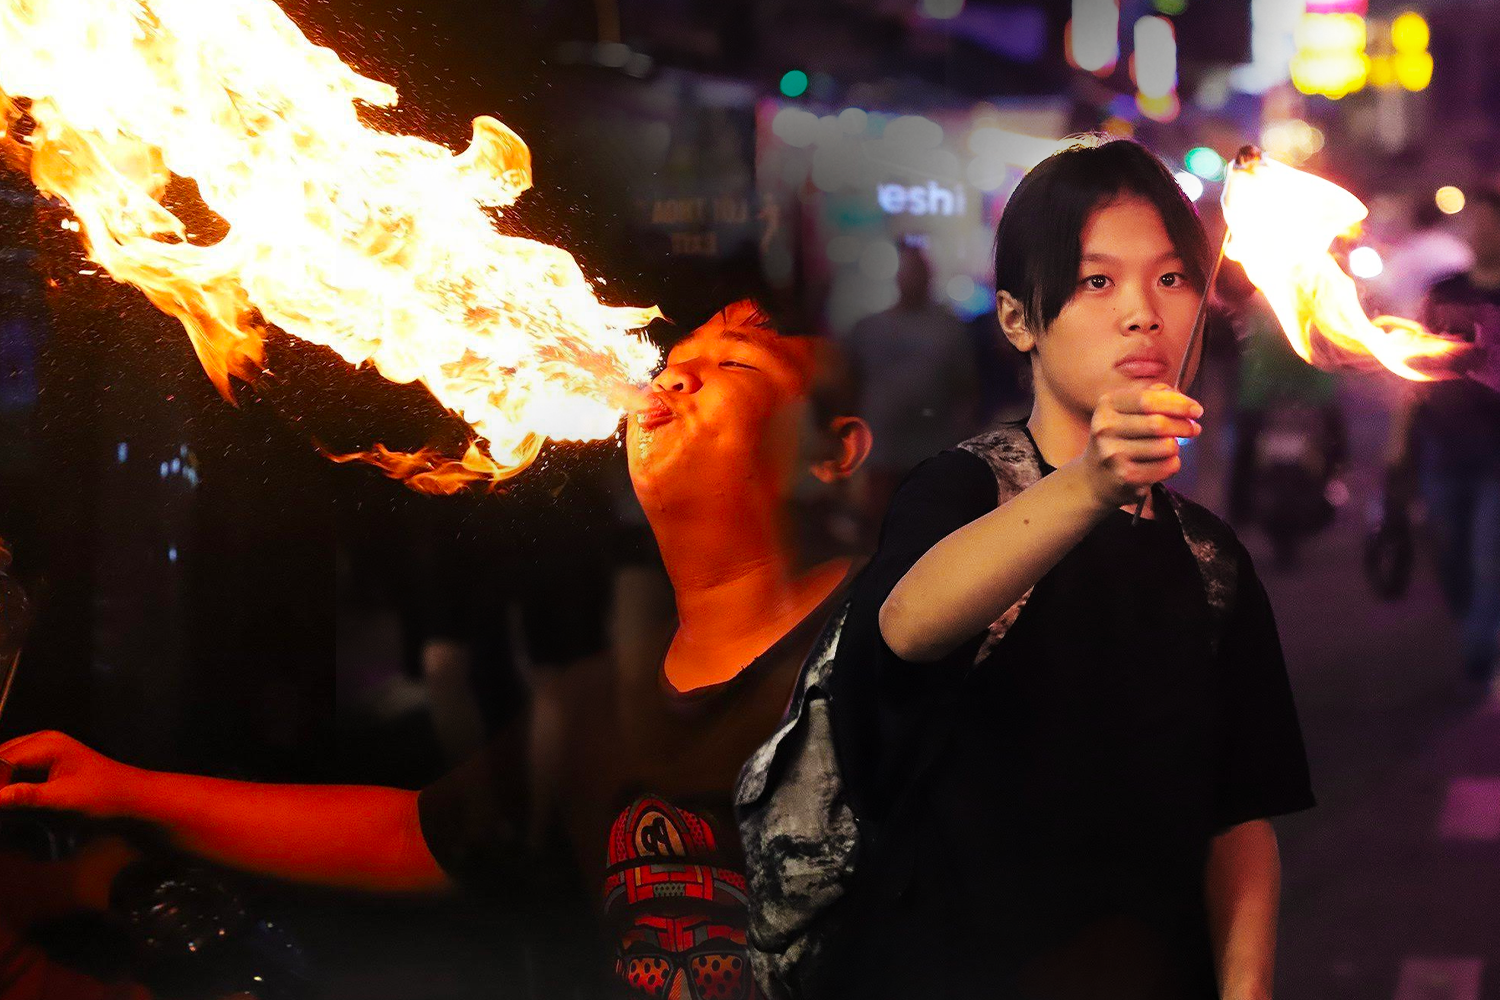 Bỏng miệng, nuốt dầu: Những đứa trẻ thổi lửa mưu sinh đêm ở phố Tây